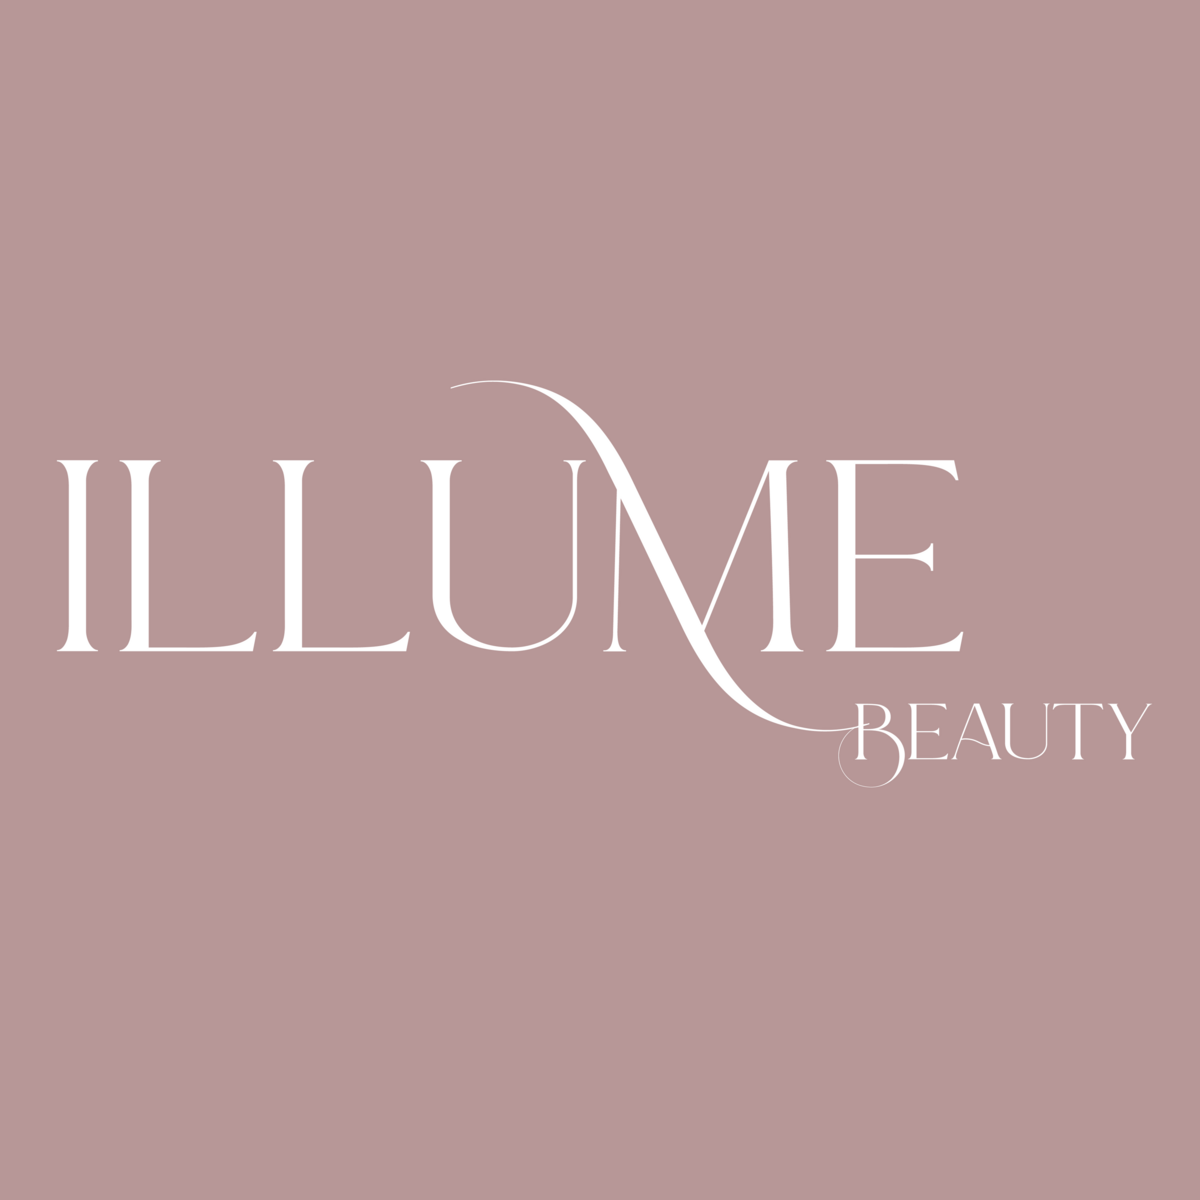 Illume Beauty_IG-01